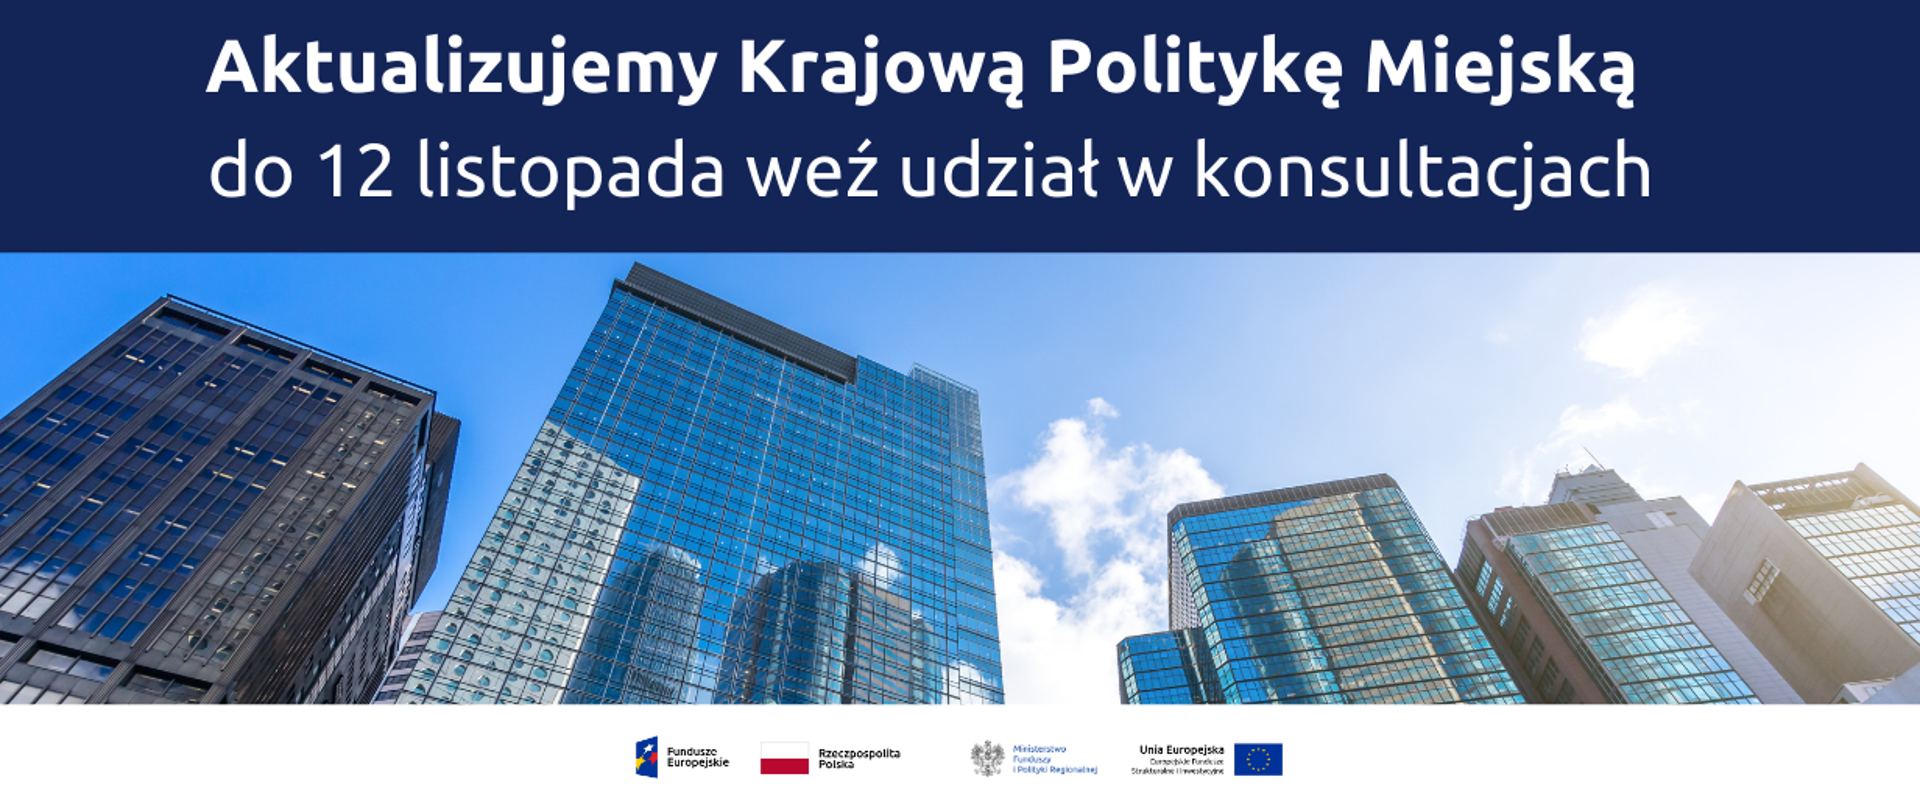 Na grafice zdjęcie wieżowców, a nad nim napis: Aktualizujemy Krajową Politykę Miejską, do 12 listopada weź udział w konsultacjach.